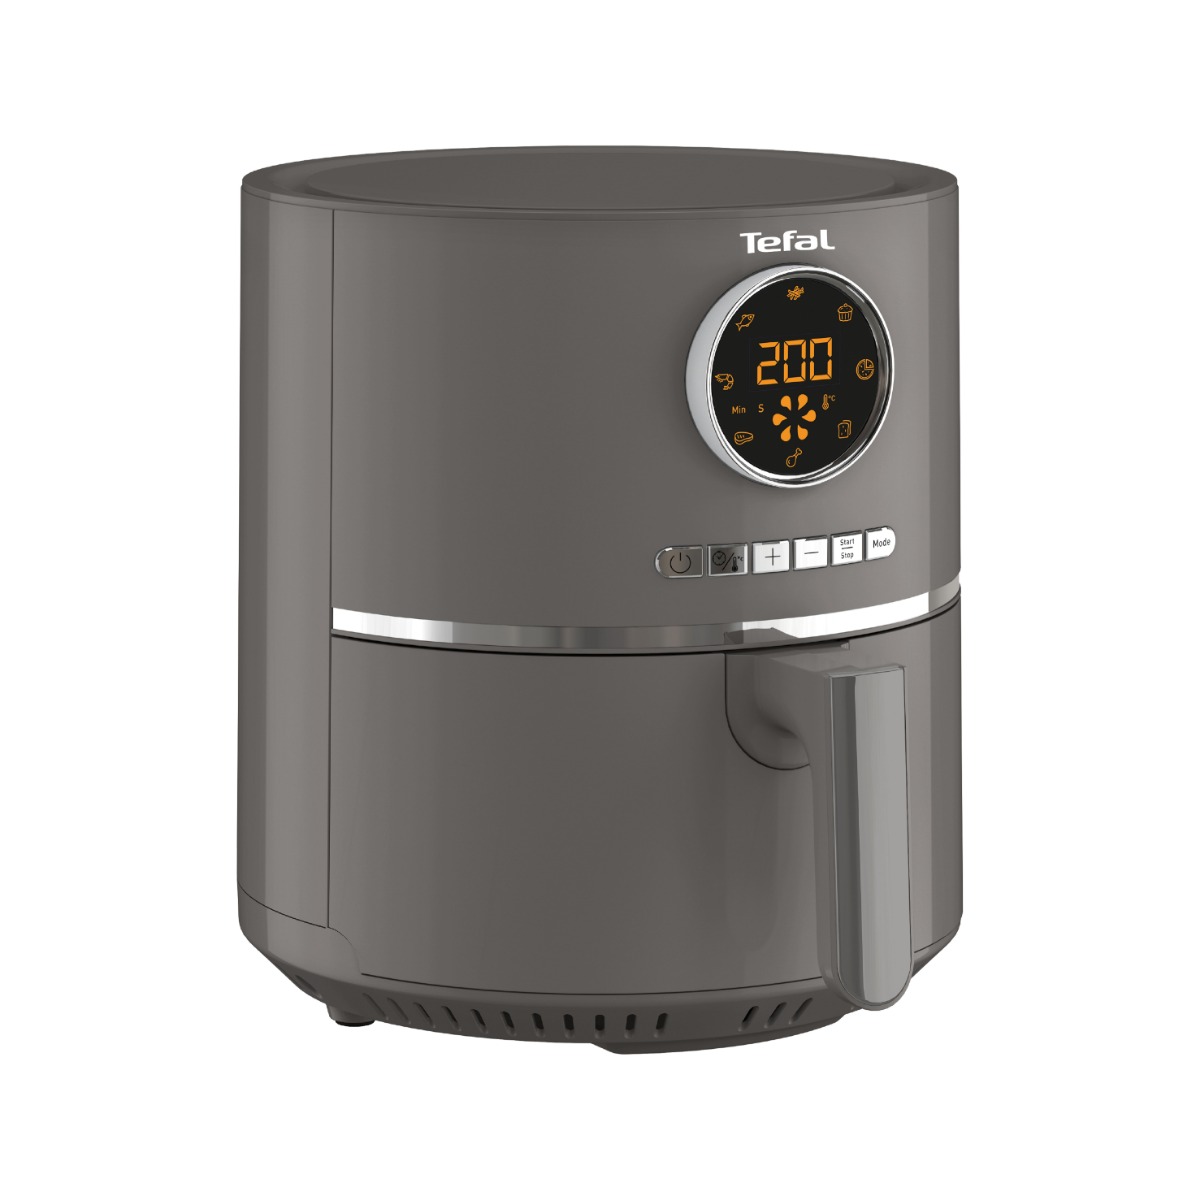 Tefal Ultra Fry Digital Air Fryer, 4.2 Liters, 1600W, Grey - EY111BTR